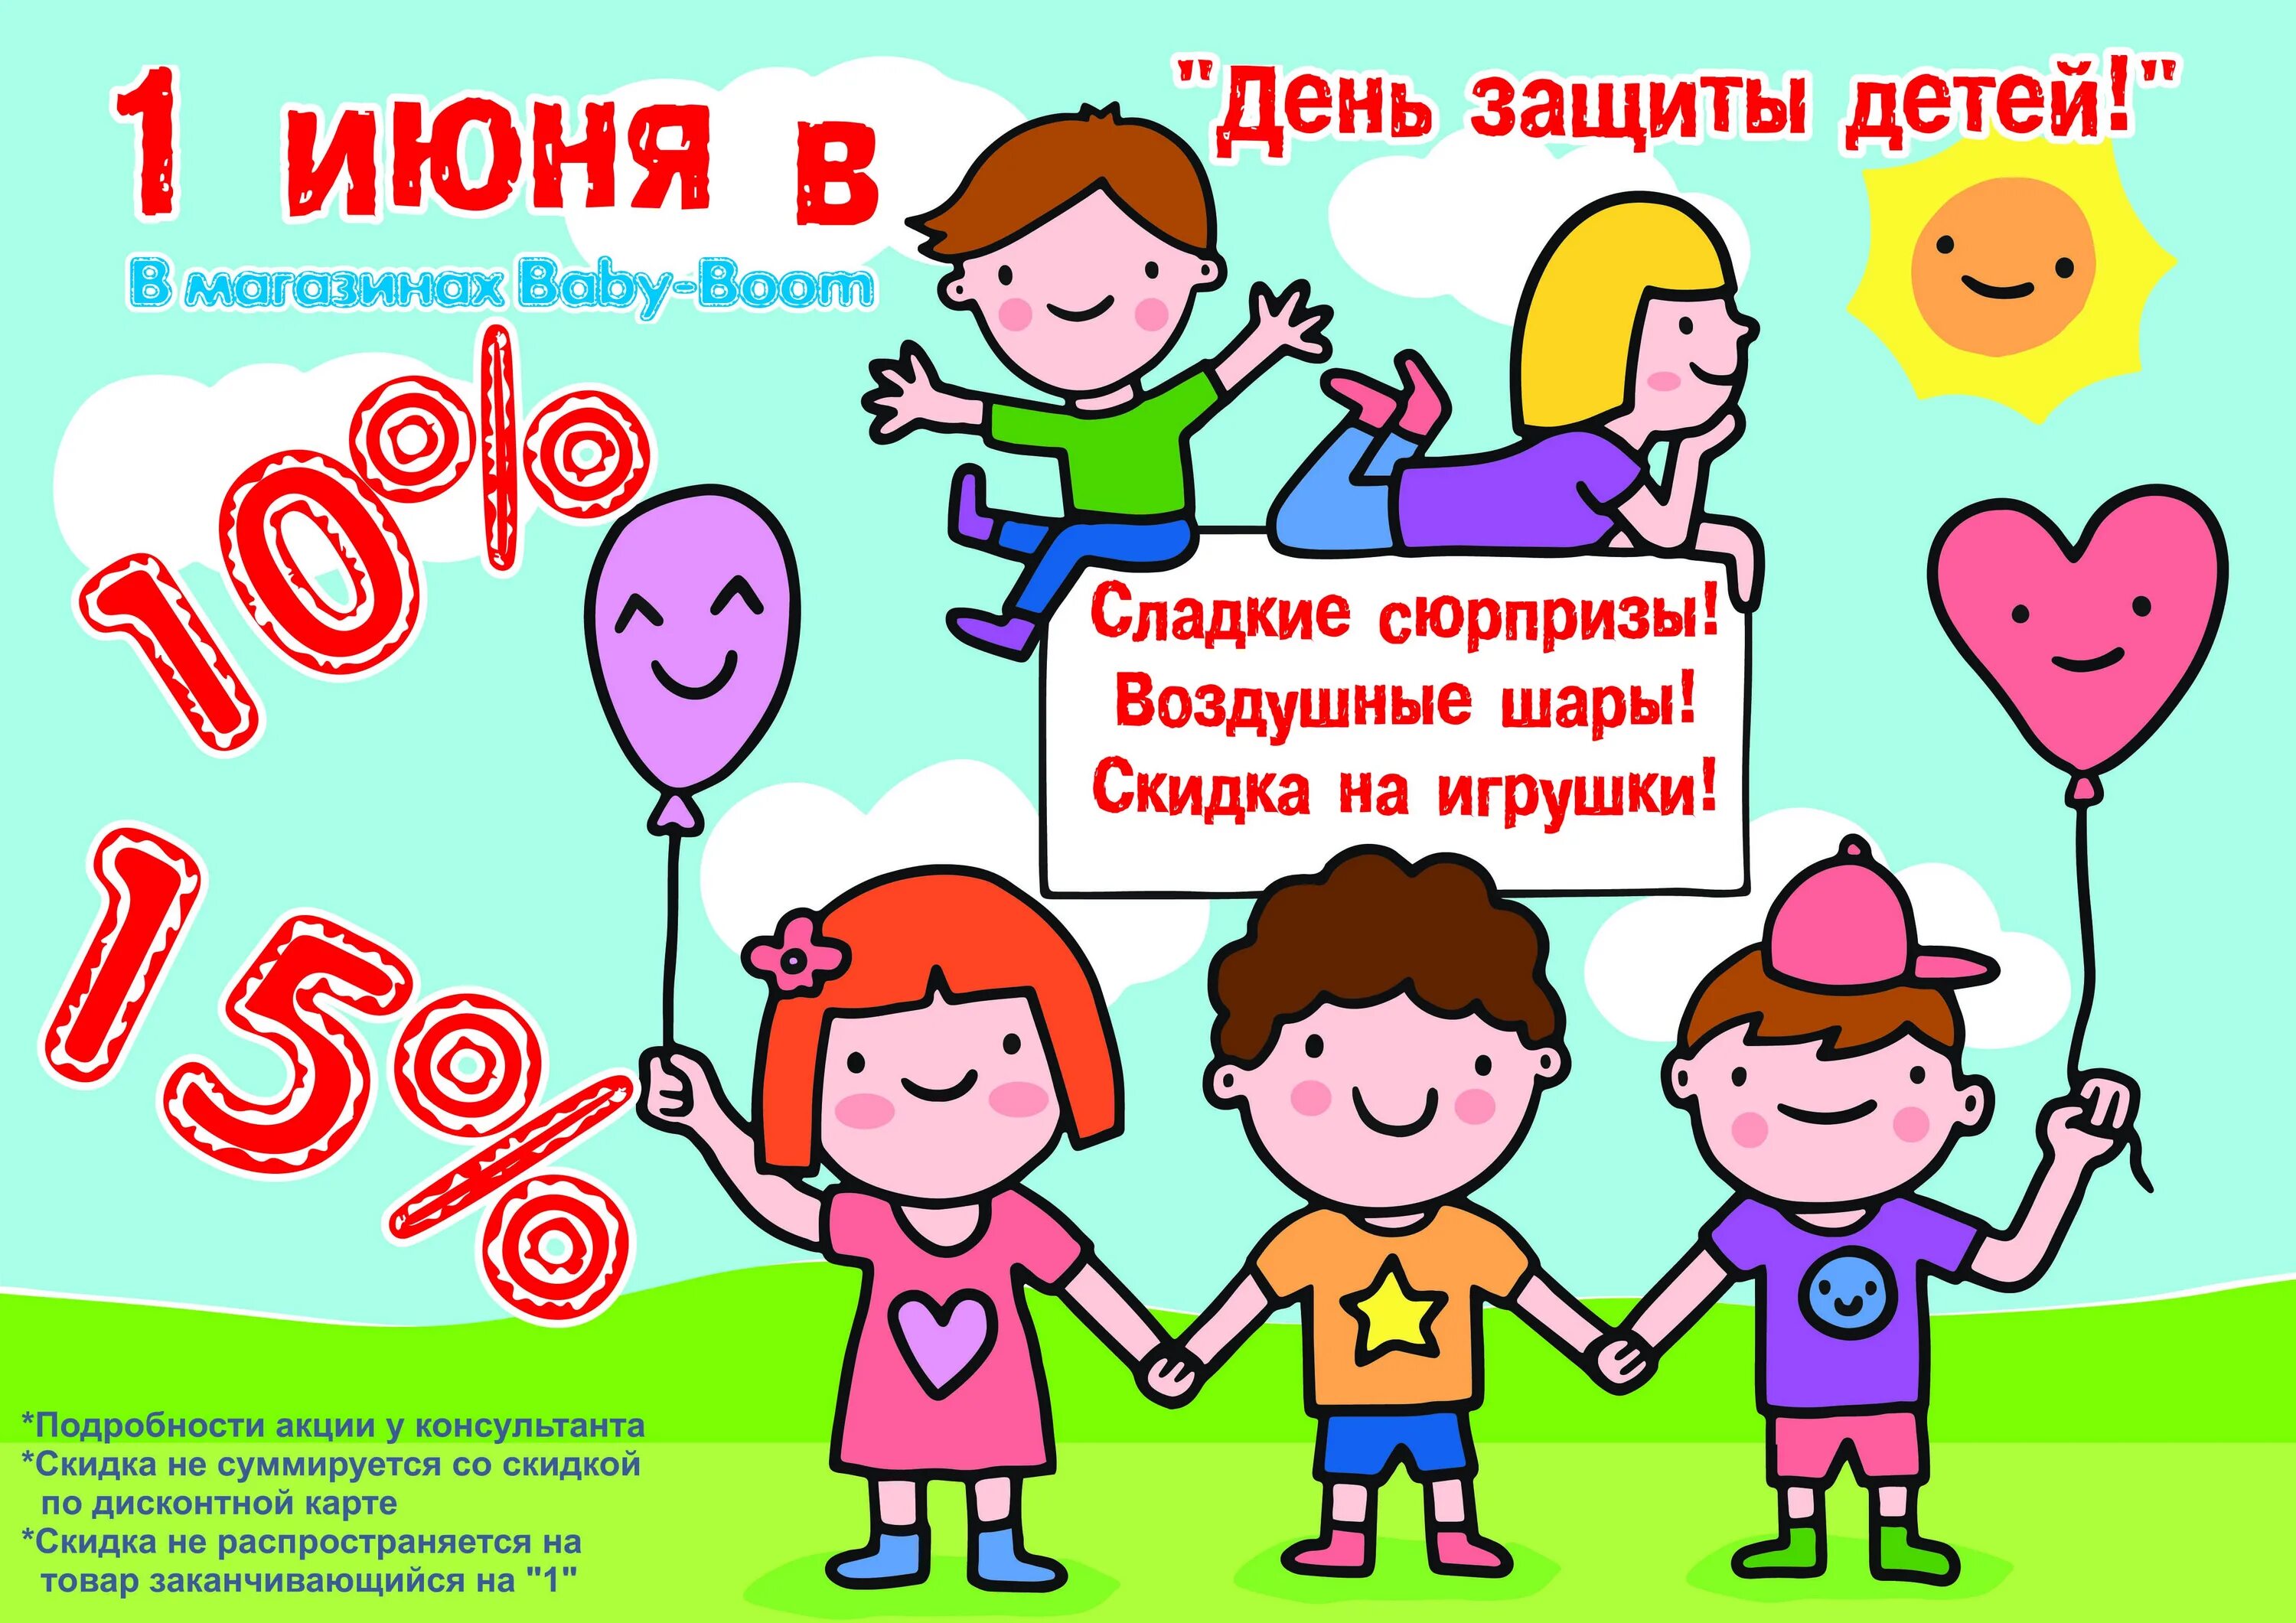 1 июня спорт. День защиты детей скидки. Акция ко Дню защиты детей. 1 Июня день защиты детей. Акции ко Дню защиты детей в магазинах.